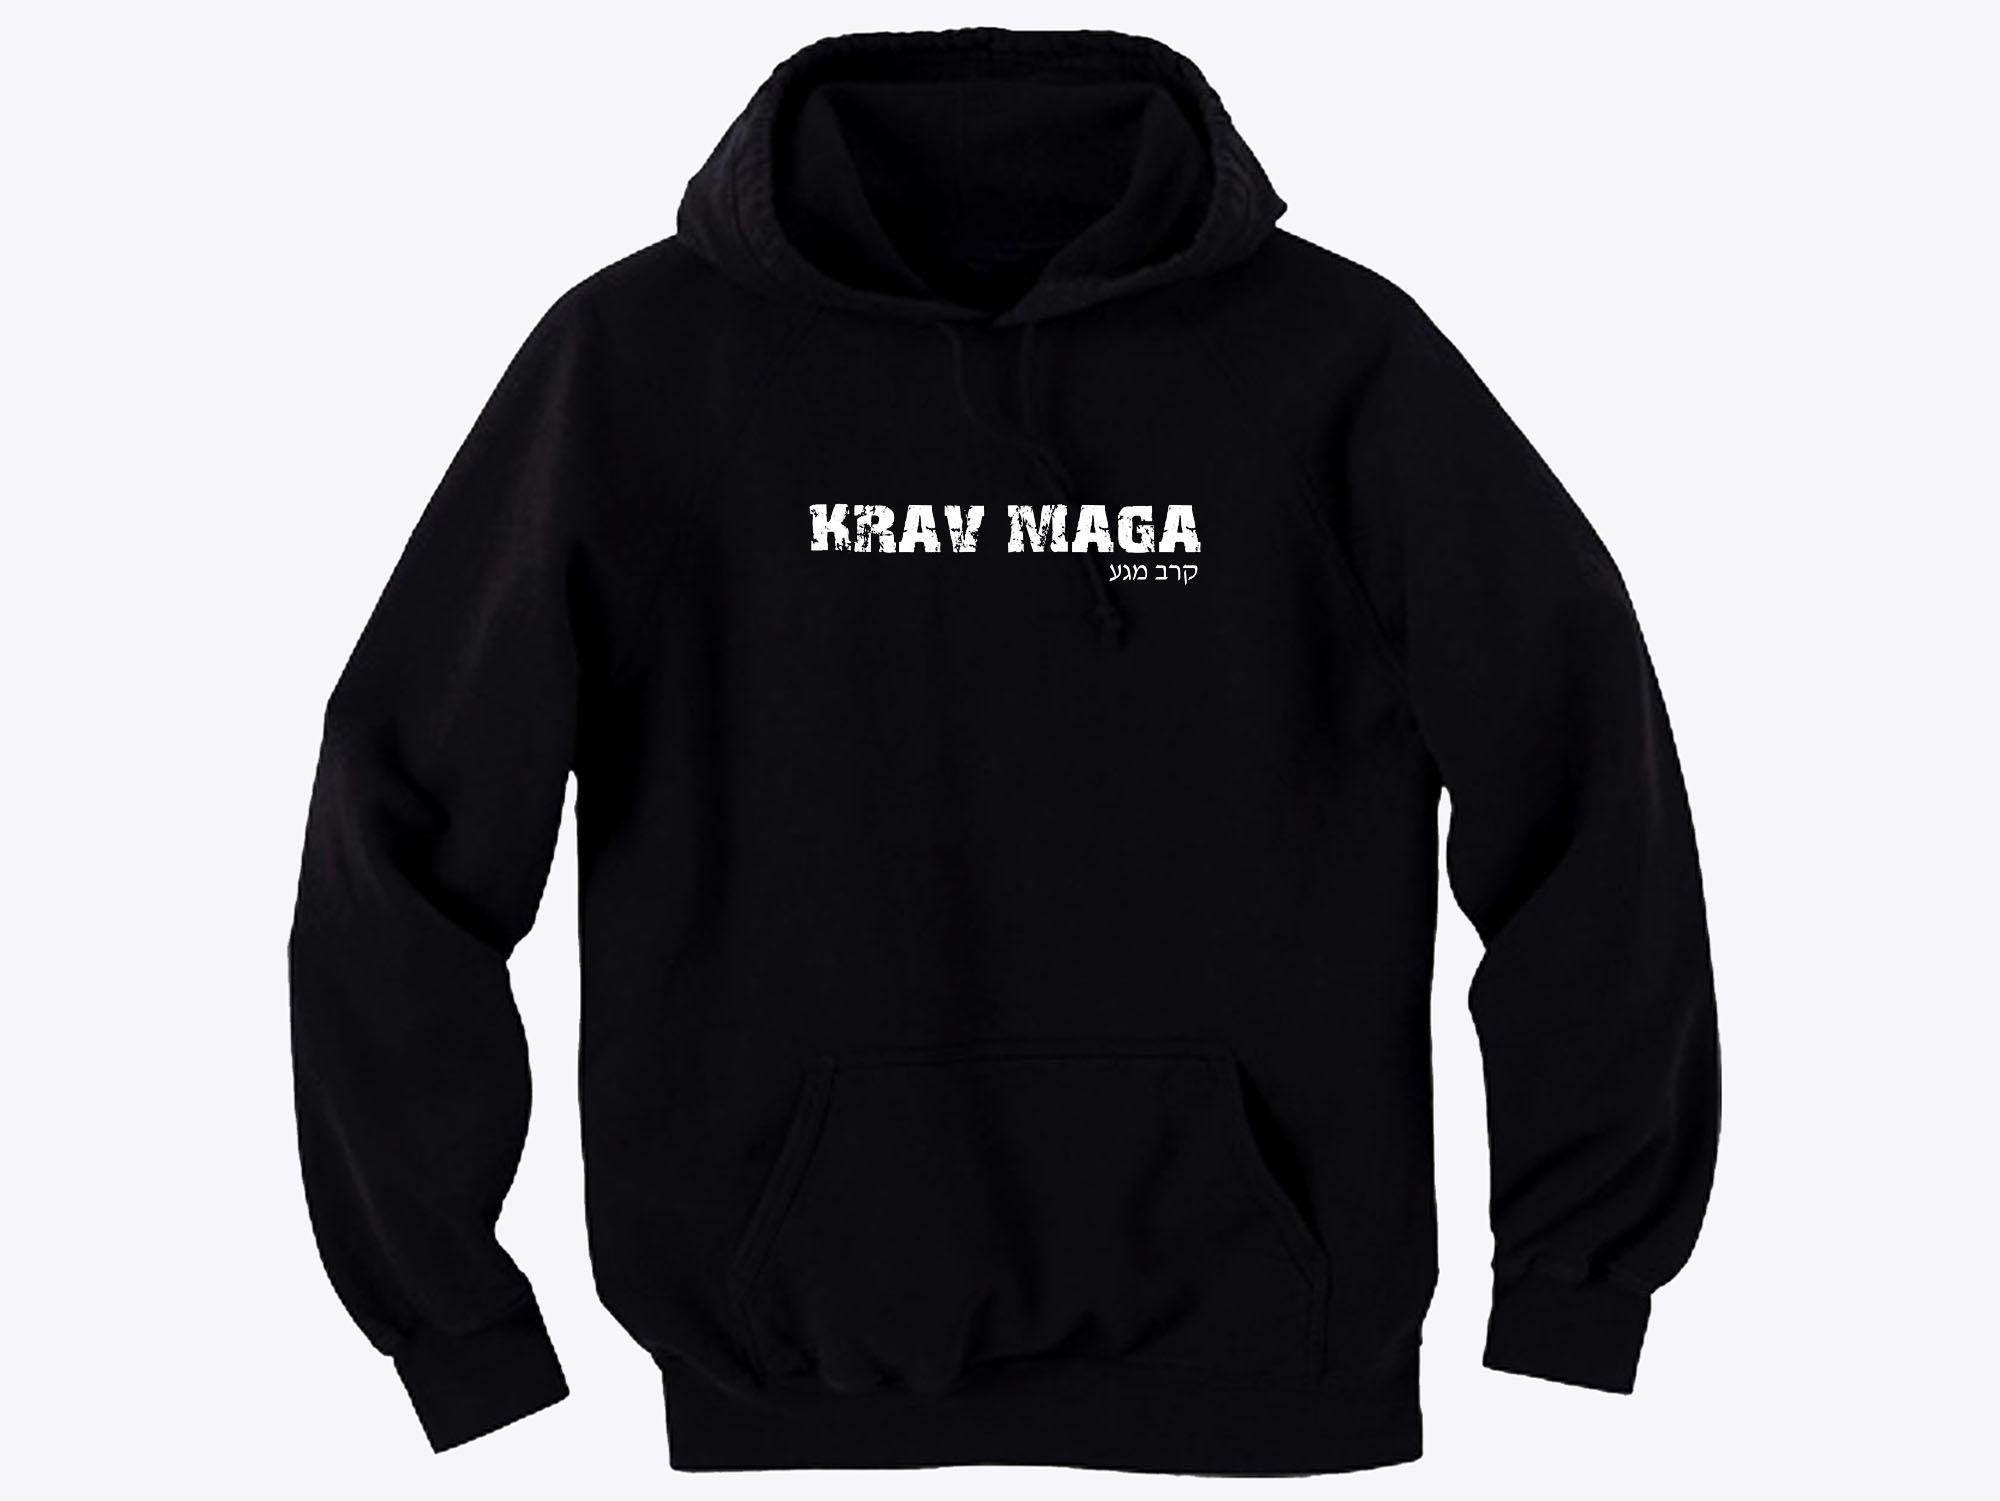 Krav Maga distressed look hoodie Plus Sizes